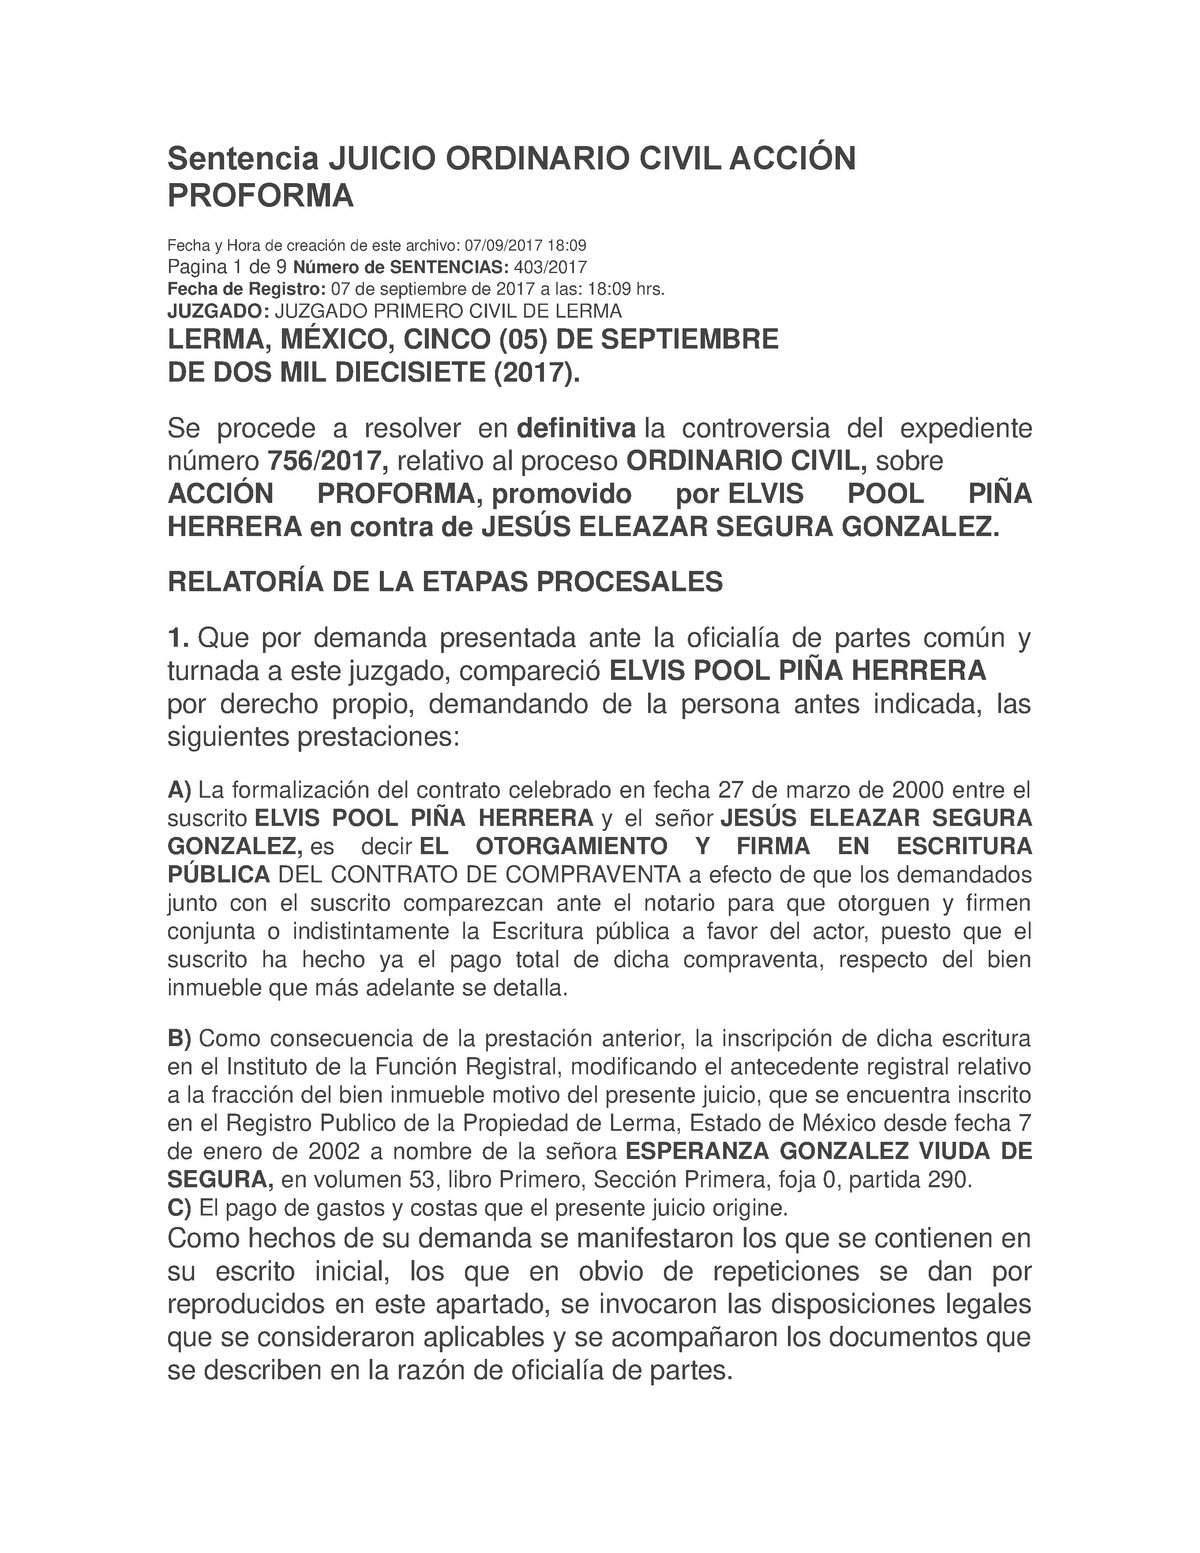 Sentencia Juicio Ordinario Civil Acción Proforma - Sentencia JUICIO  ORDINARIO CIVIL ACCIÓN PROFORMA - Studocu